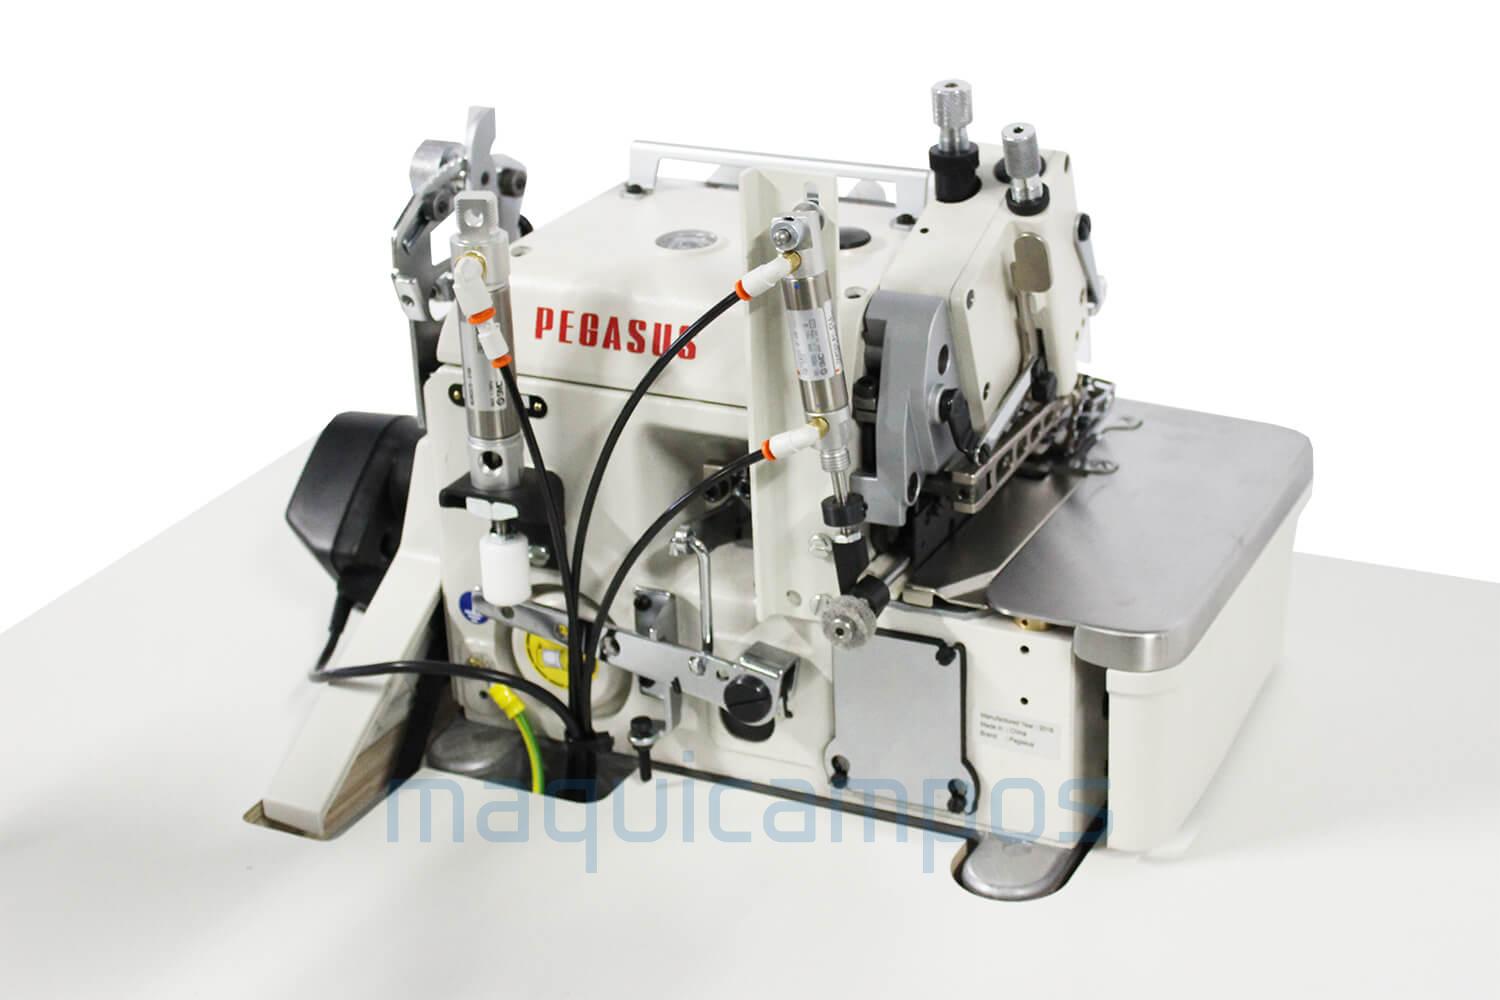 Pegasus EXT5214H-55 525K-2x4 / Z054 Máquina de Costura Corte e Cose com Kit BL para Artigos Extra Altos